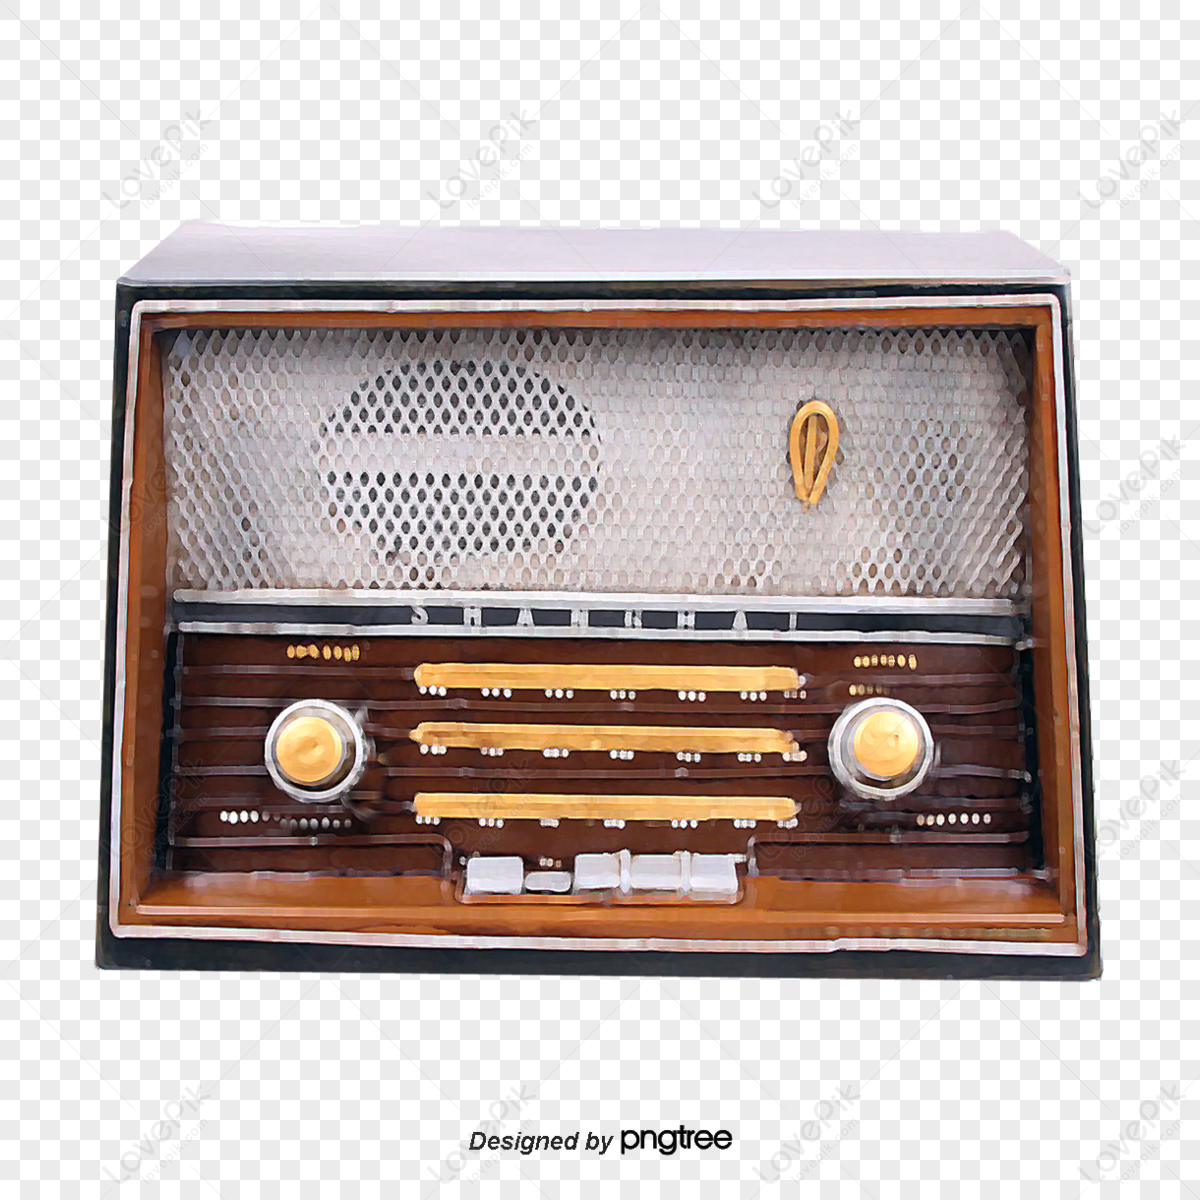 Vintage Radio, Vintage, Radio, Retro PNG and Vector with